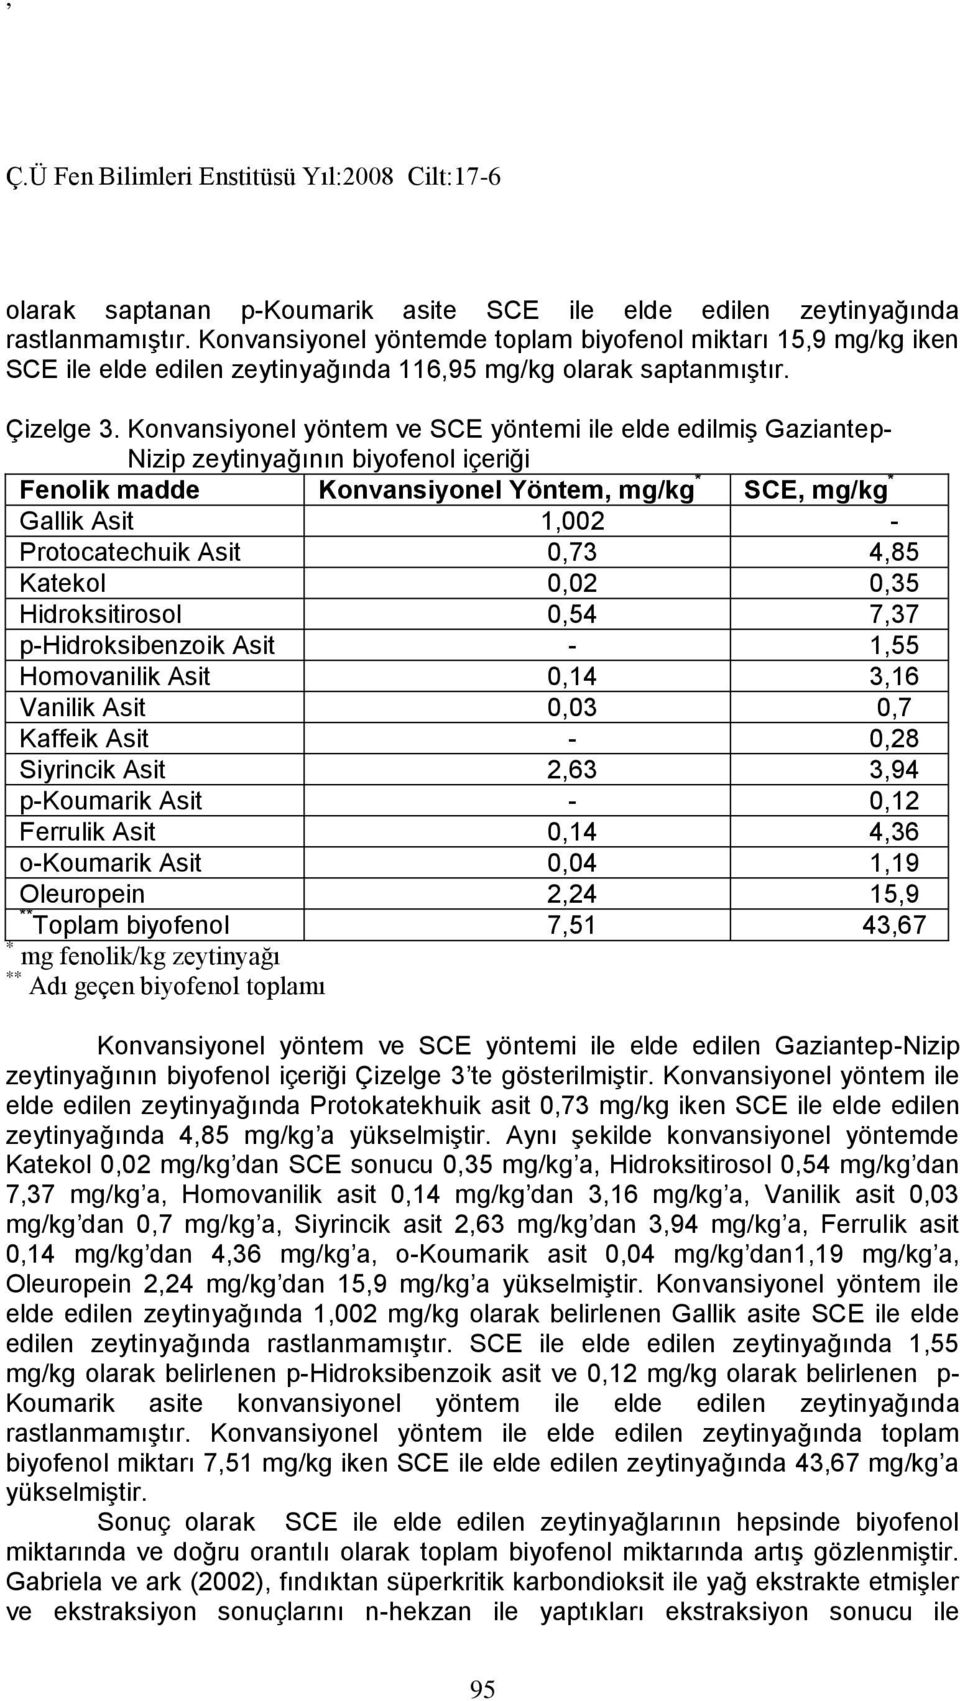 Konvansiyonel yöntem ve SCE yöntemi ile elde edilmiş Gaziantep- Nizip zeytinyağının biyofenol içeriği Fenolik madde Konvansiyonel Yöntem, mg/kg * SCE, mg/kg * Gallik Asit 1,002 - Protocatechuik Asit